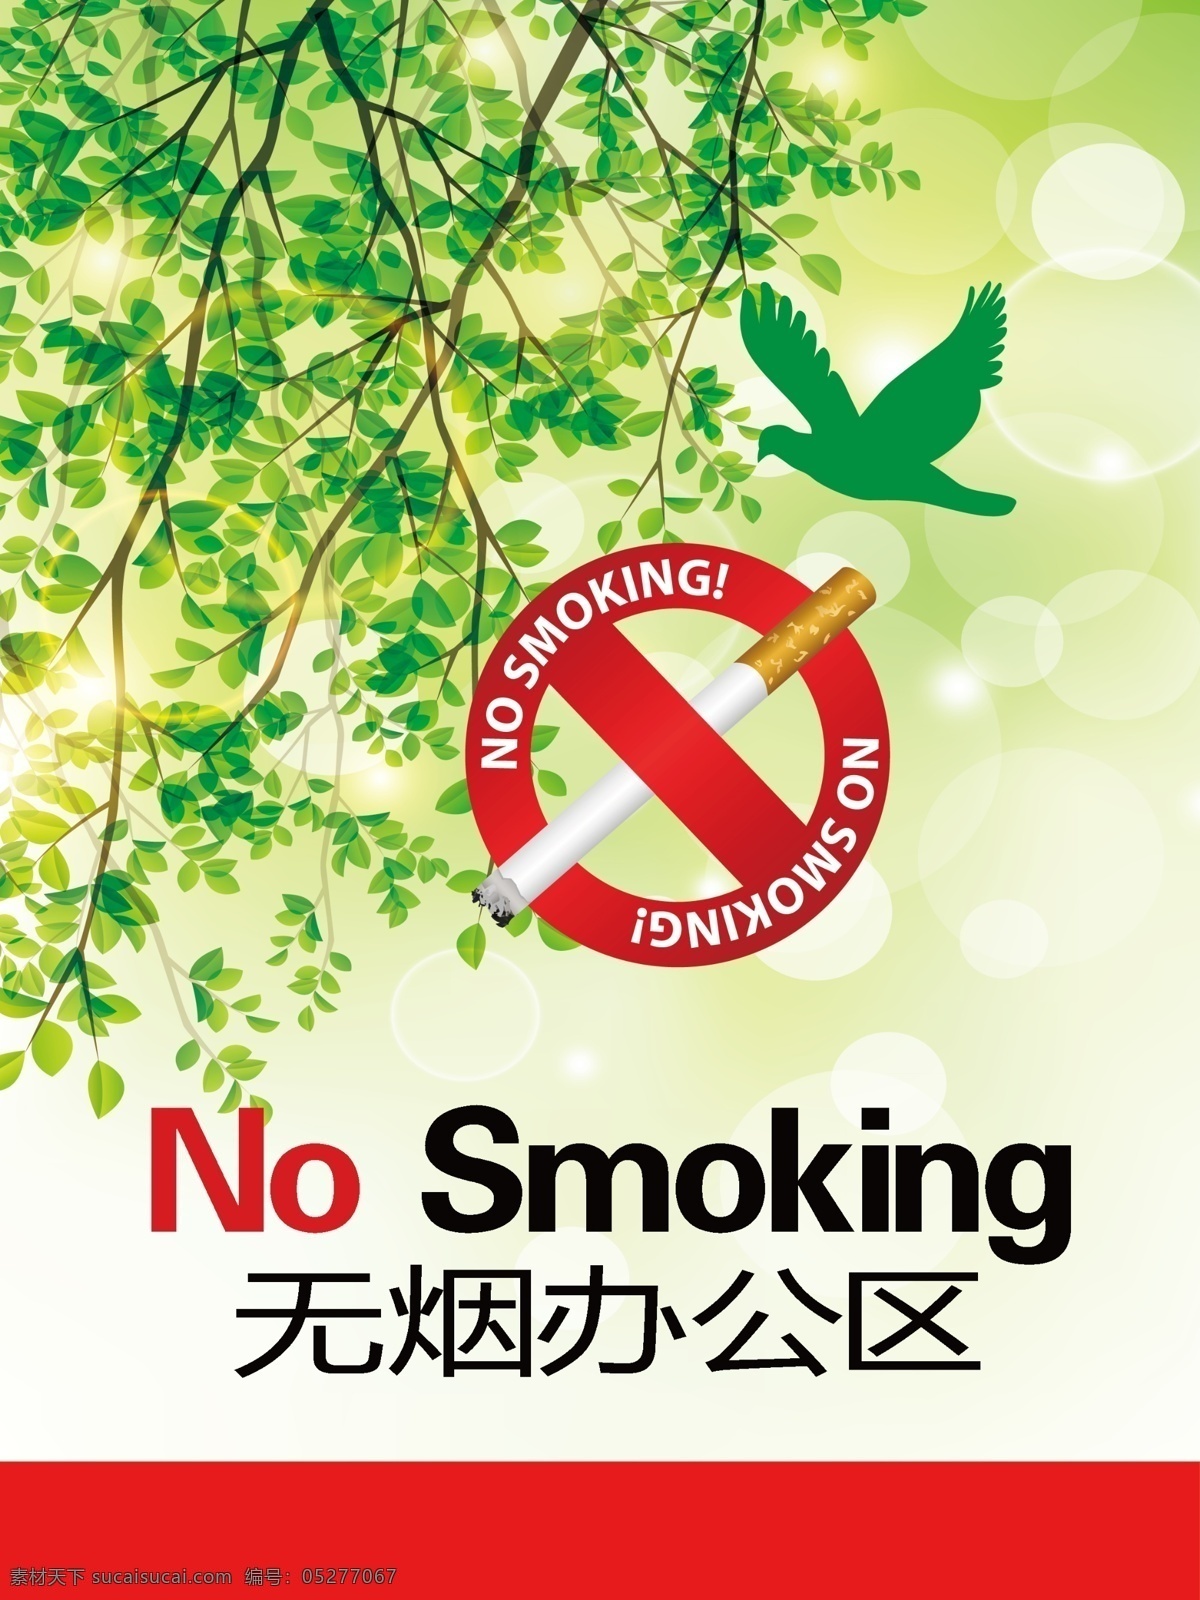 禁止吸烟 无烟 办公区 空气 小鸟